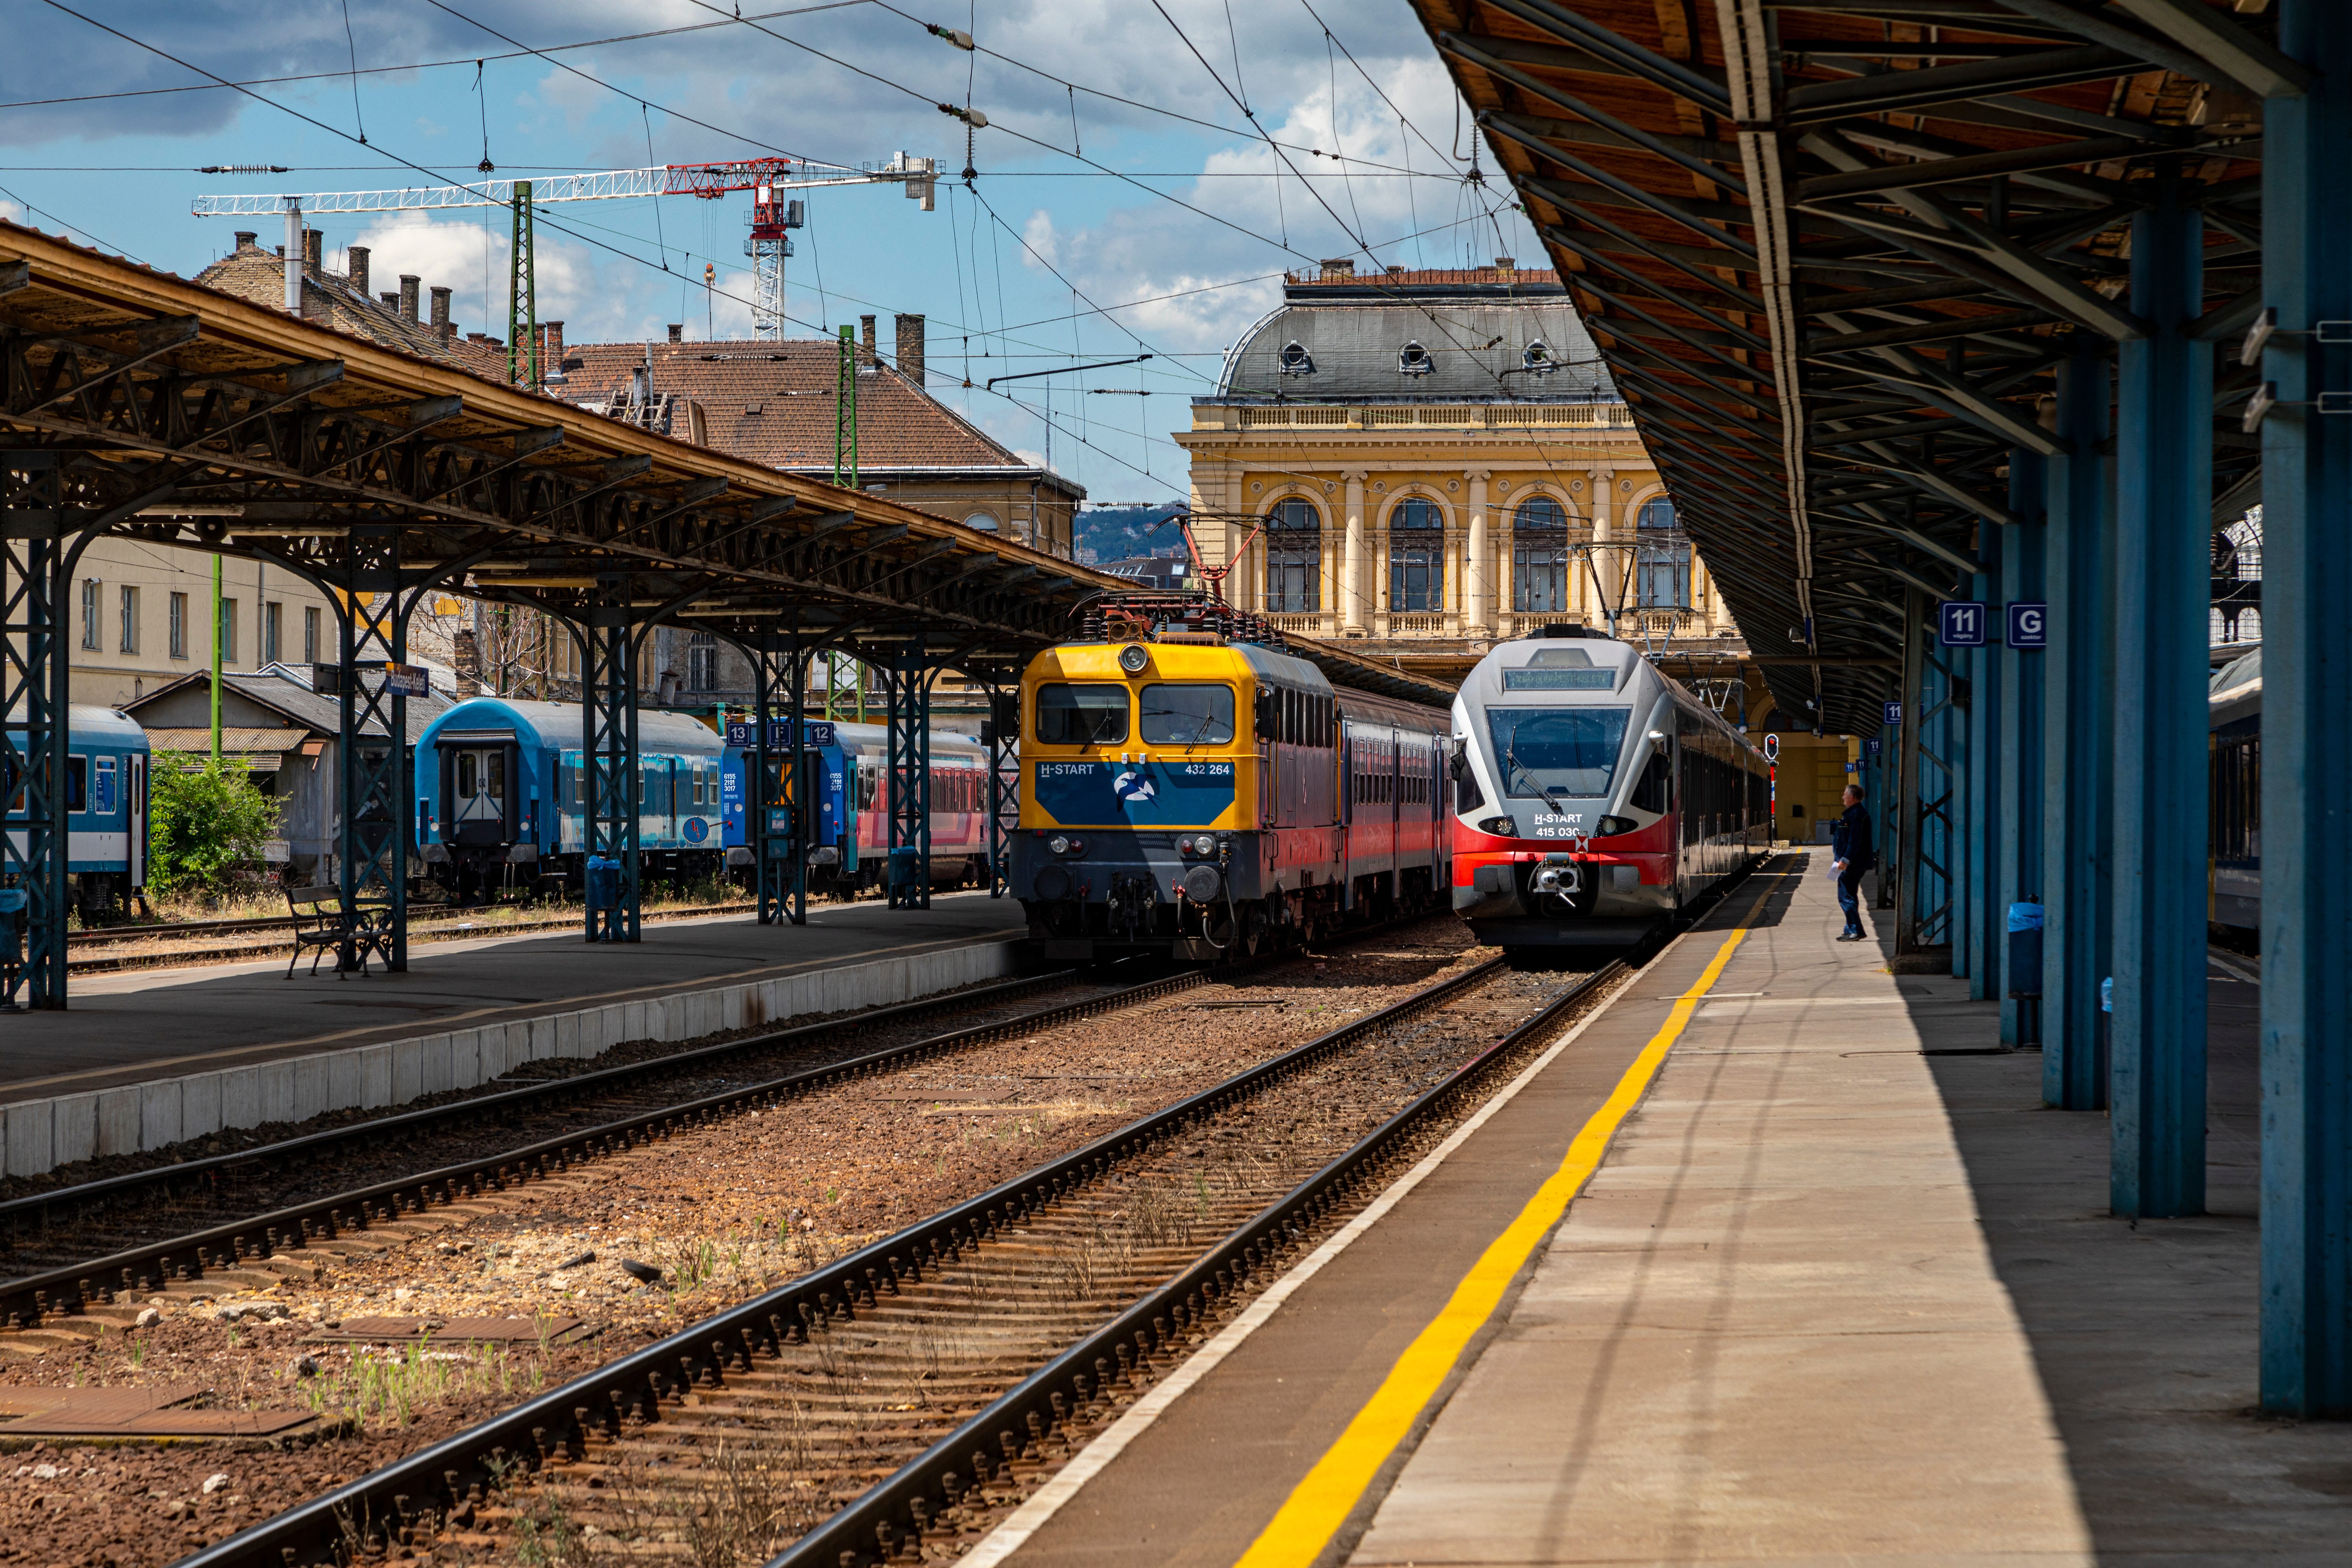 Station Boedapest